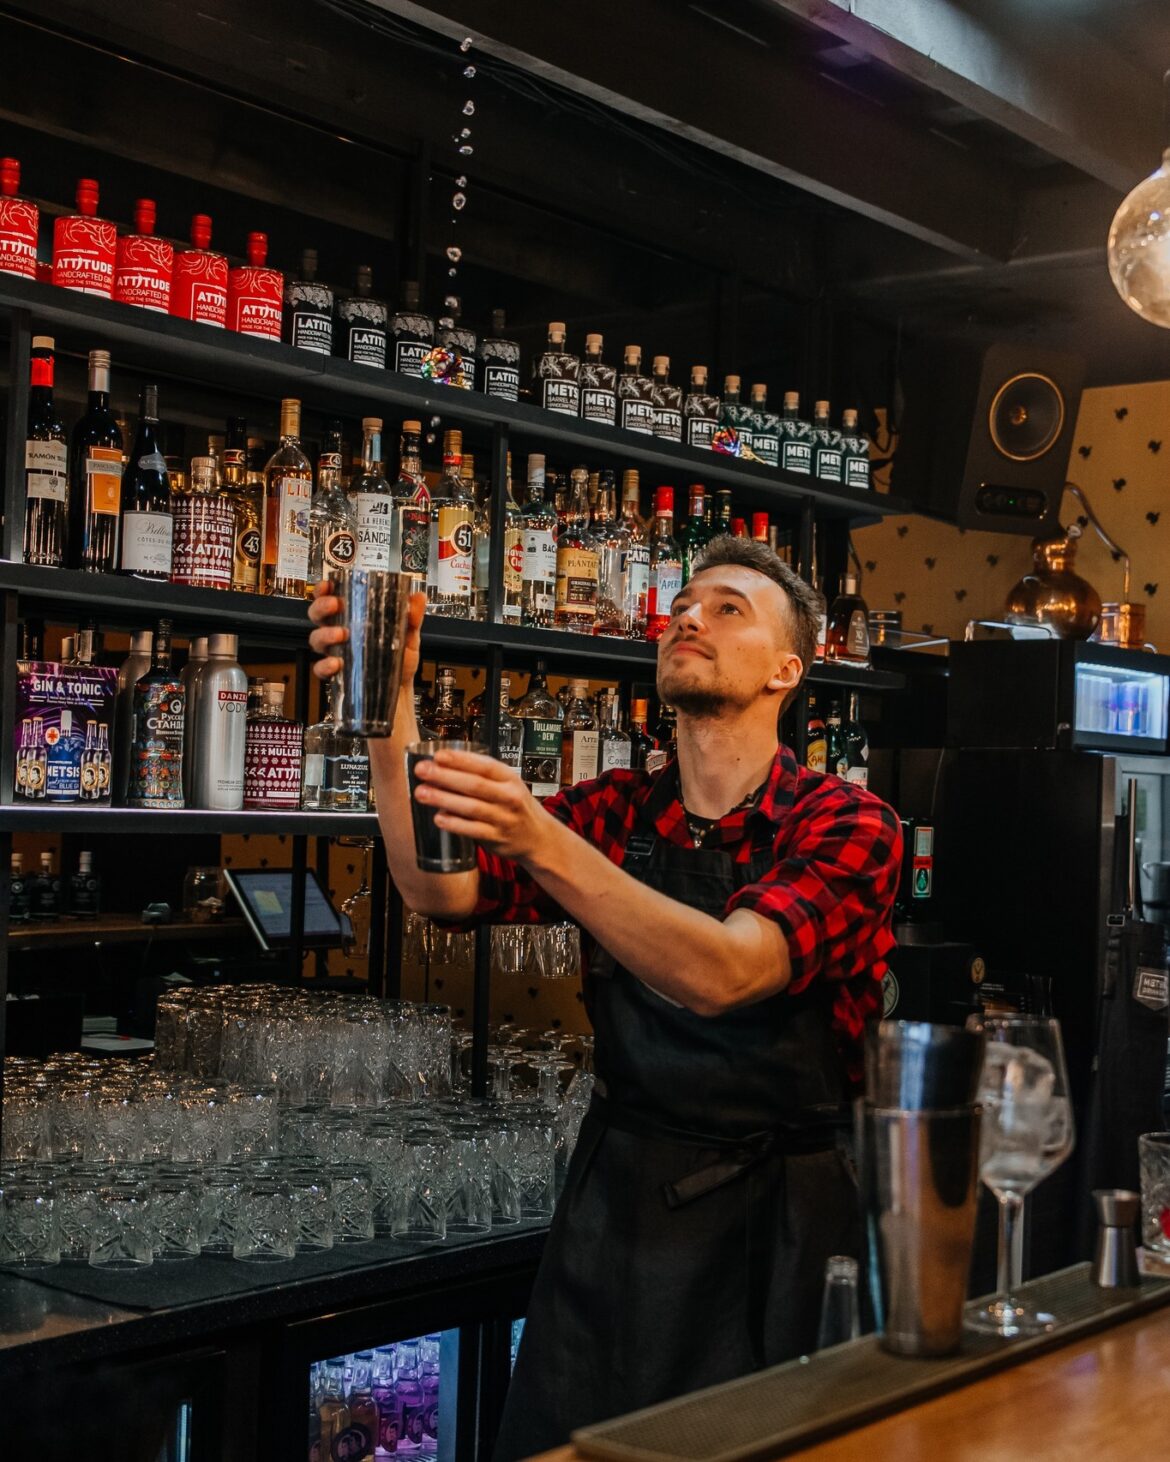 Tallinnassa osoitteessa Telliskivi 60 sijaitsee panimo, jonka baarin yhteydessä pääsee maistelemaan erilaisia ginejä